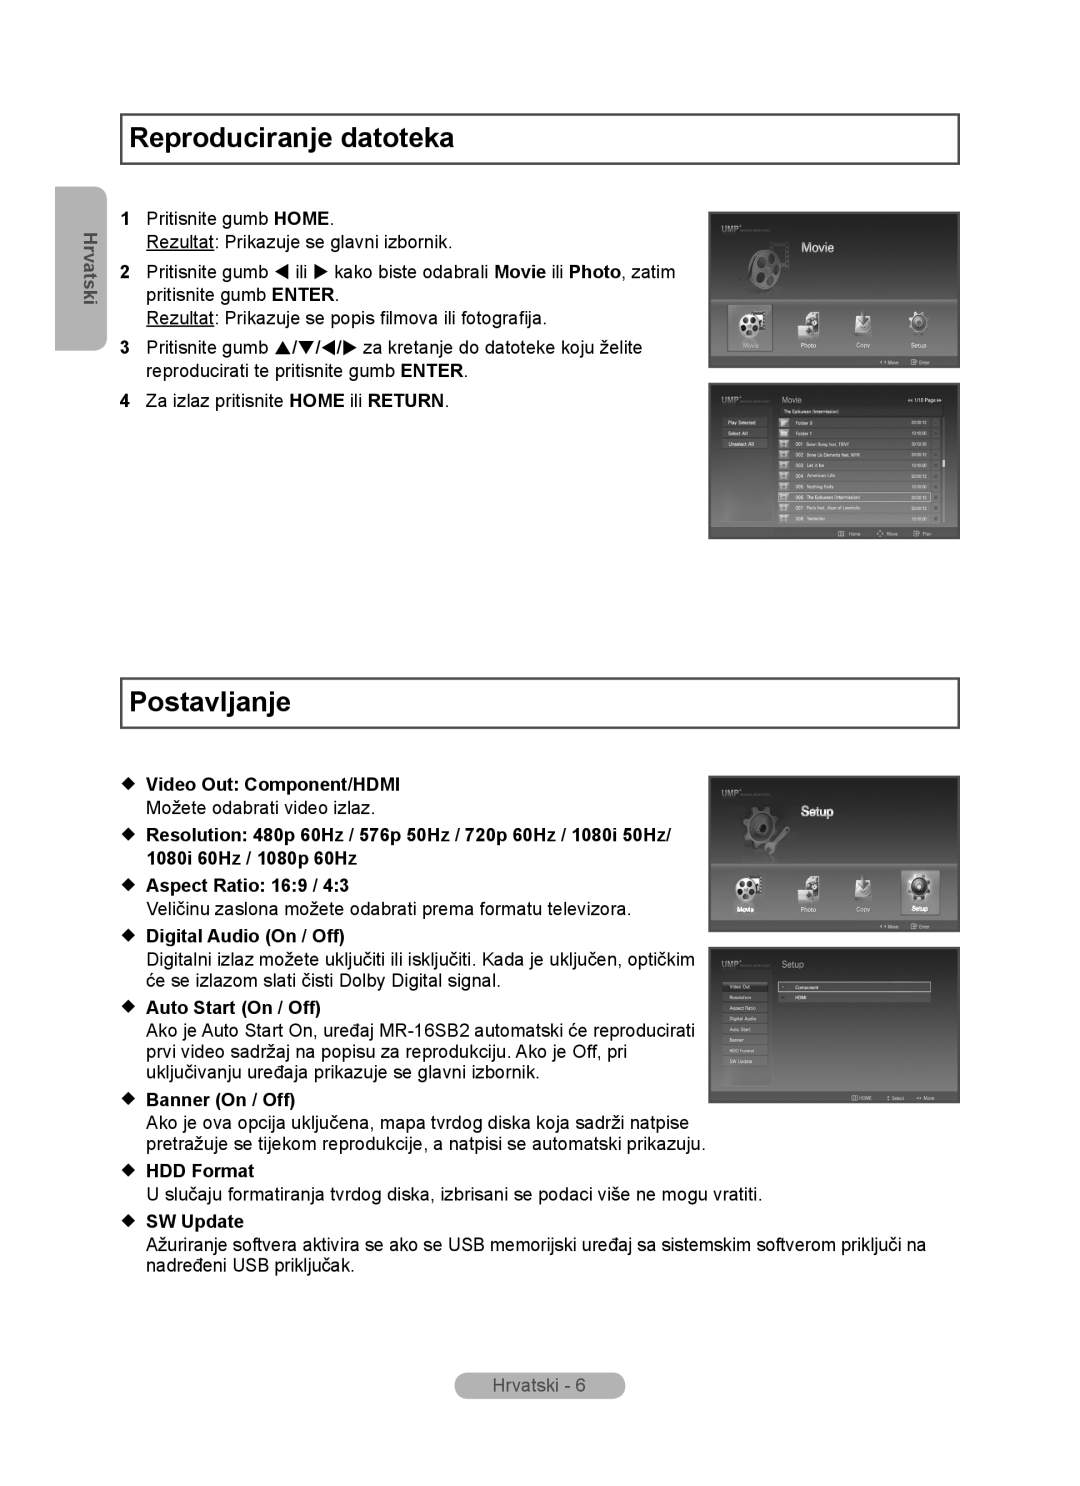 Samsung MR-16SB2 manual Reproduciranje datoteka, Postavljanje, Hrvatski,  Video Out Component/HDMI,  Aspect Ratio 169 